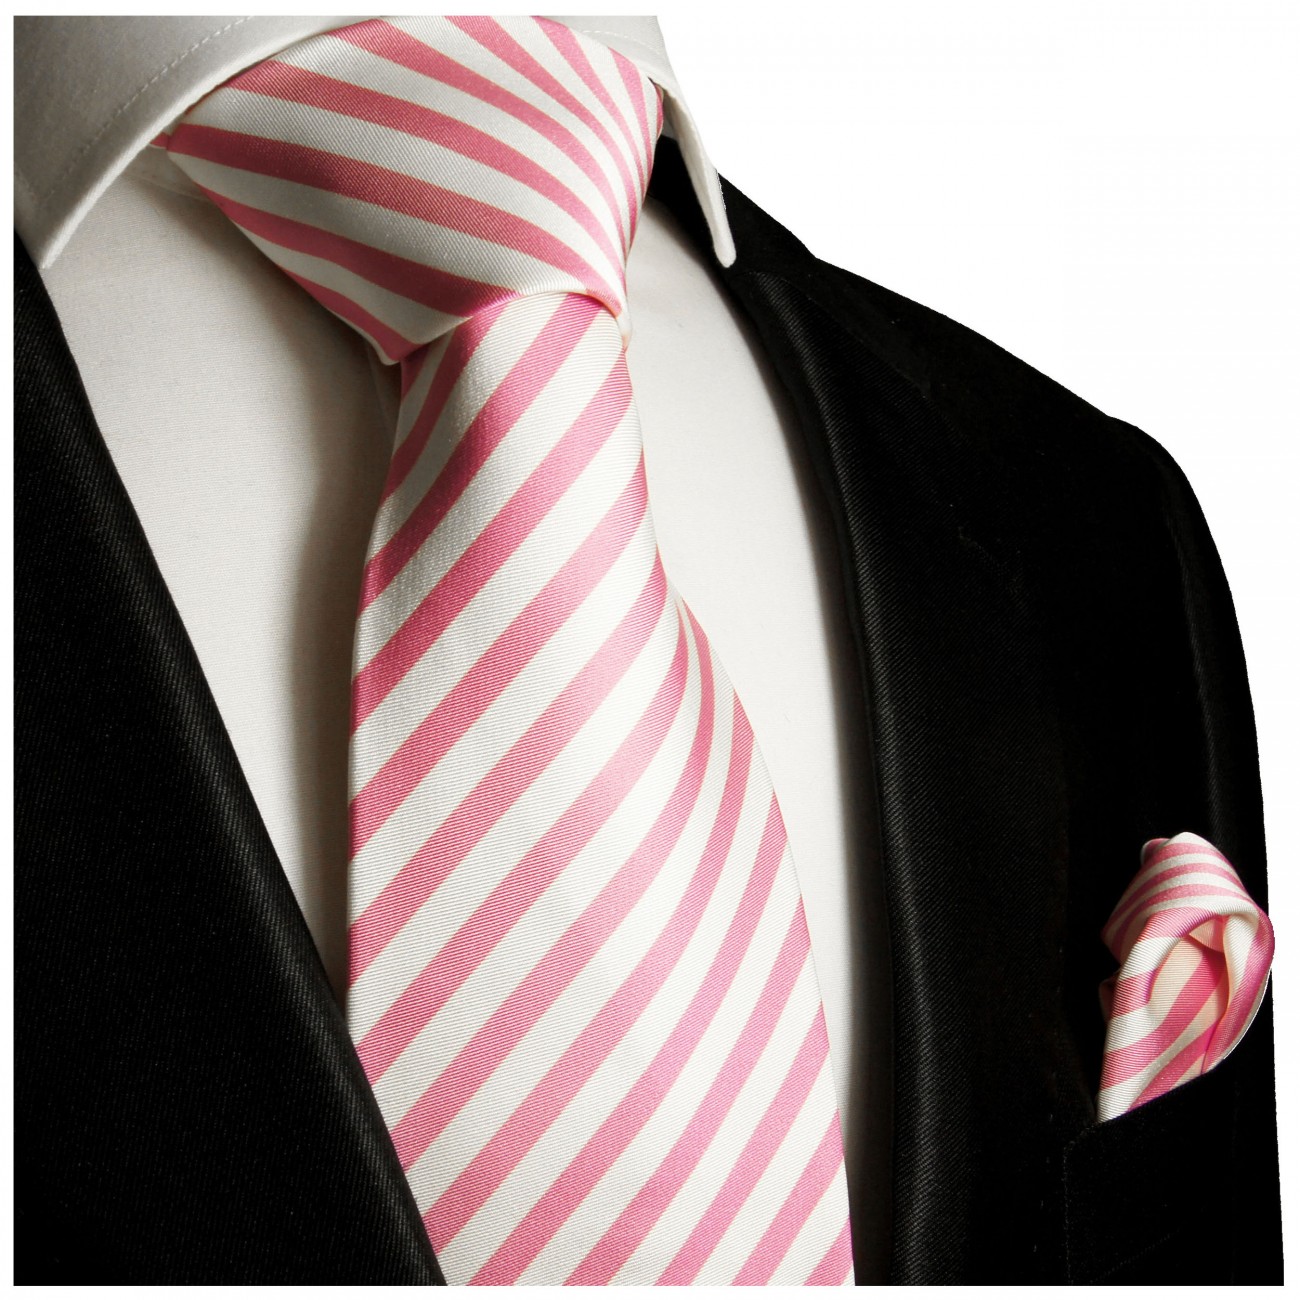 Krawatte pink weiß gestreift Seide mit Einstecktuch